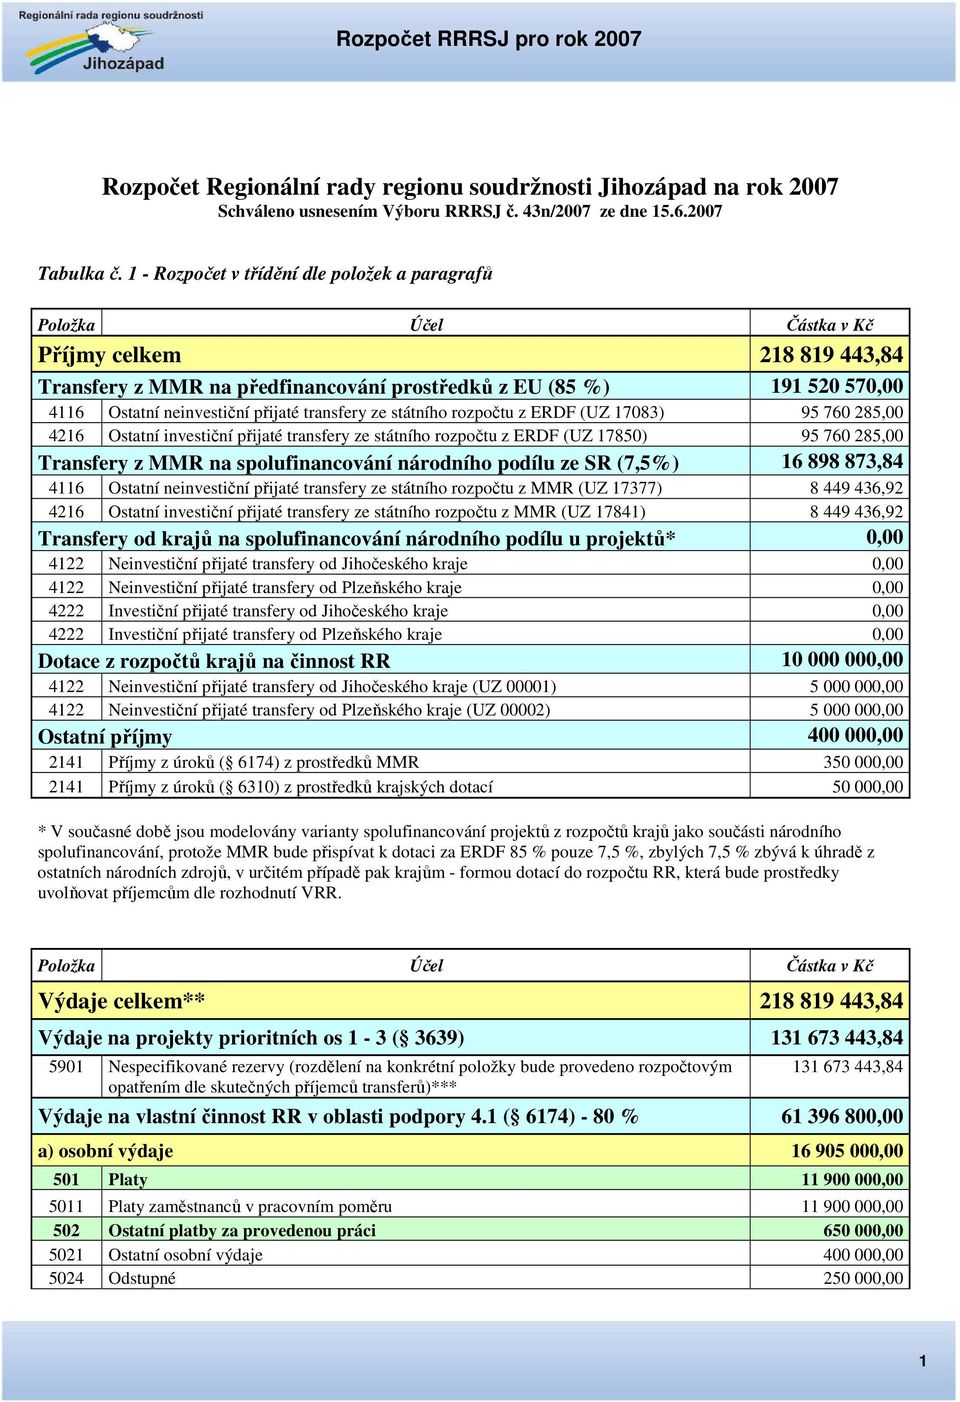 státního rozpočtu z ERDF (UZ 17083) 95 760 285,00 4216 Ostatní investiční přijaté transfery ze státního rozpočtu z ERDF (UZ 17850) 95 760 285,00 Transfery z MMR na spolufinancování národního podílu